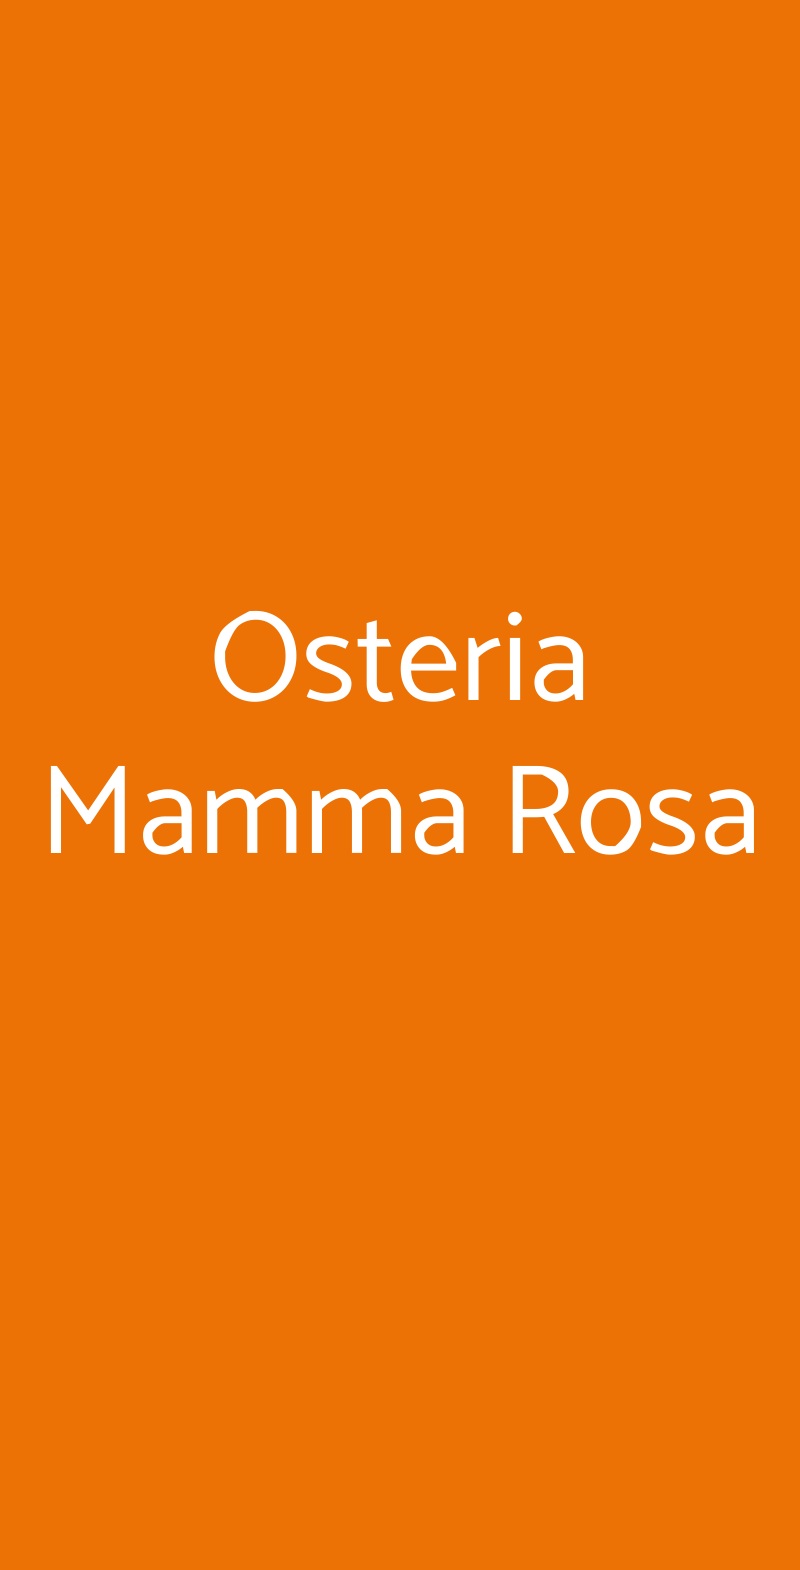 Osteria Mamma Rosa Milano menù 1 pagina